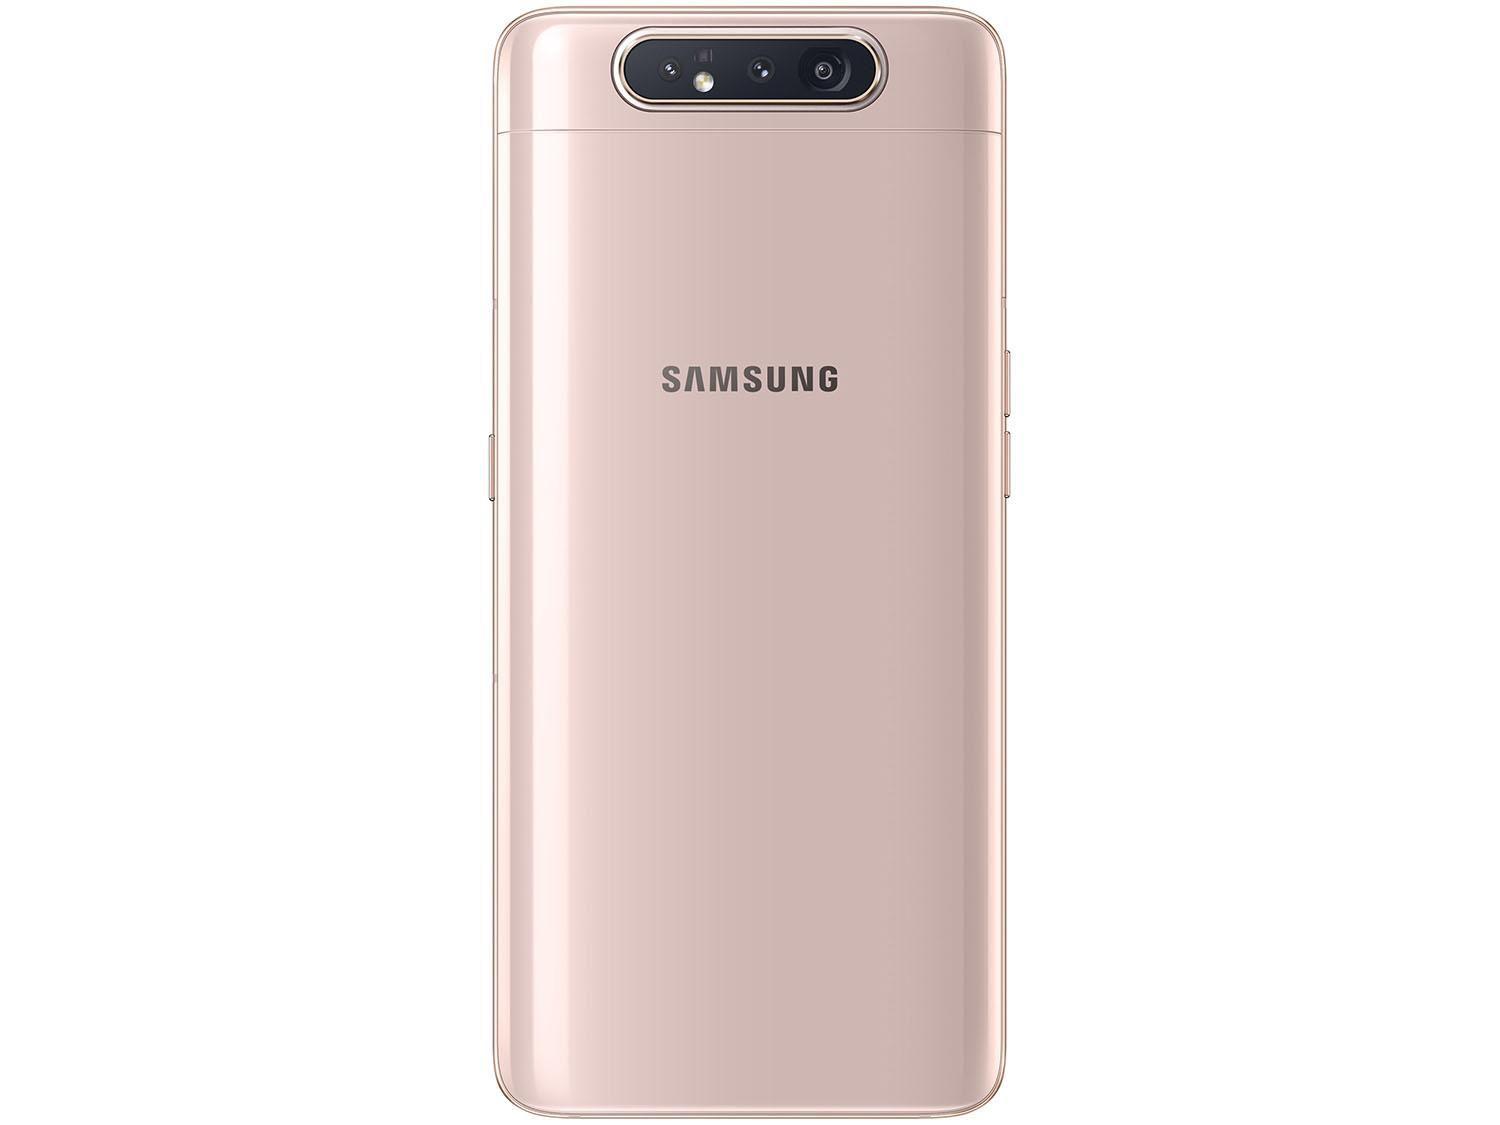 Samsung Galaxy A72 8 128